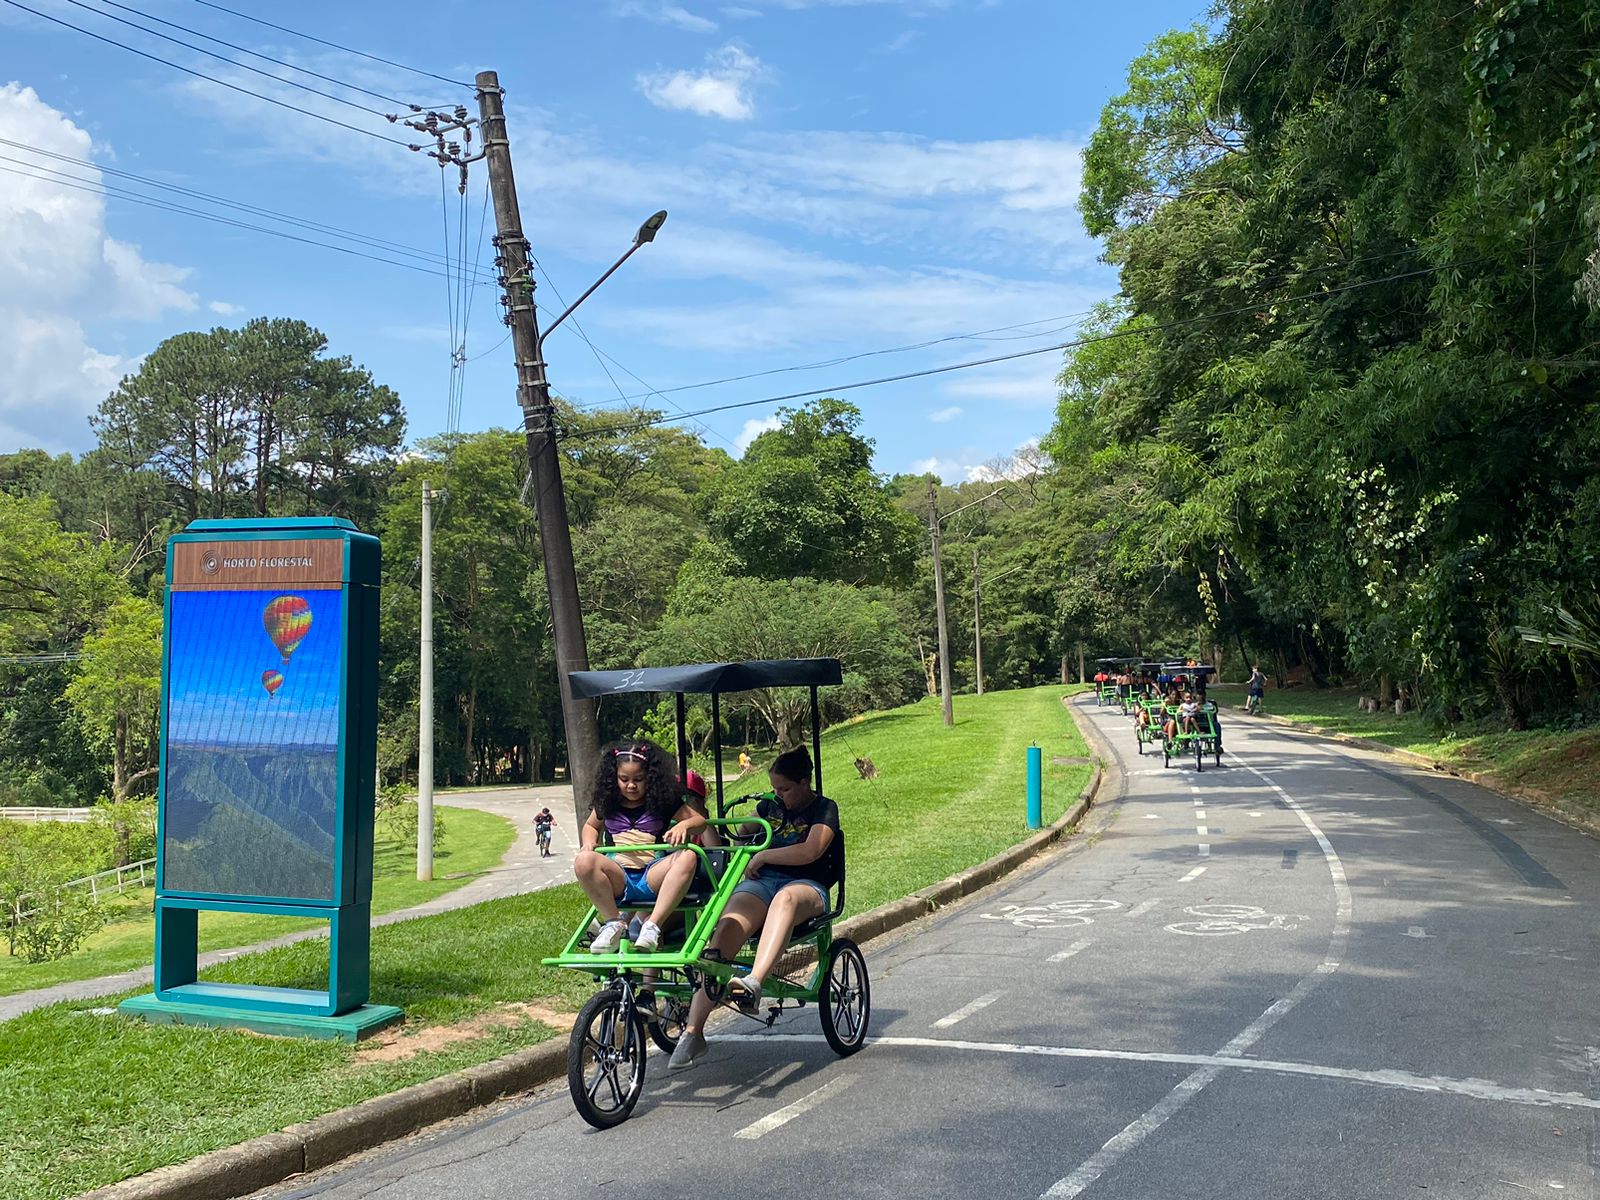 Urbia lança serviço de aluguel de bicicletas e triciclos no Parque Horto Florestal de São Paulo